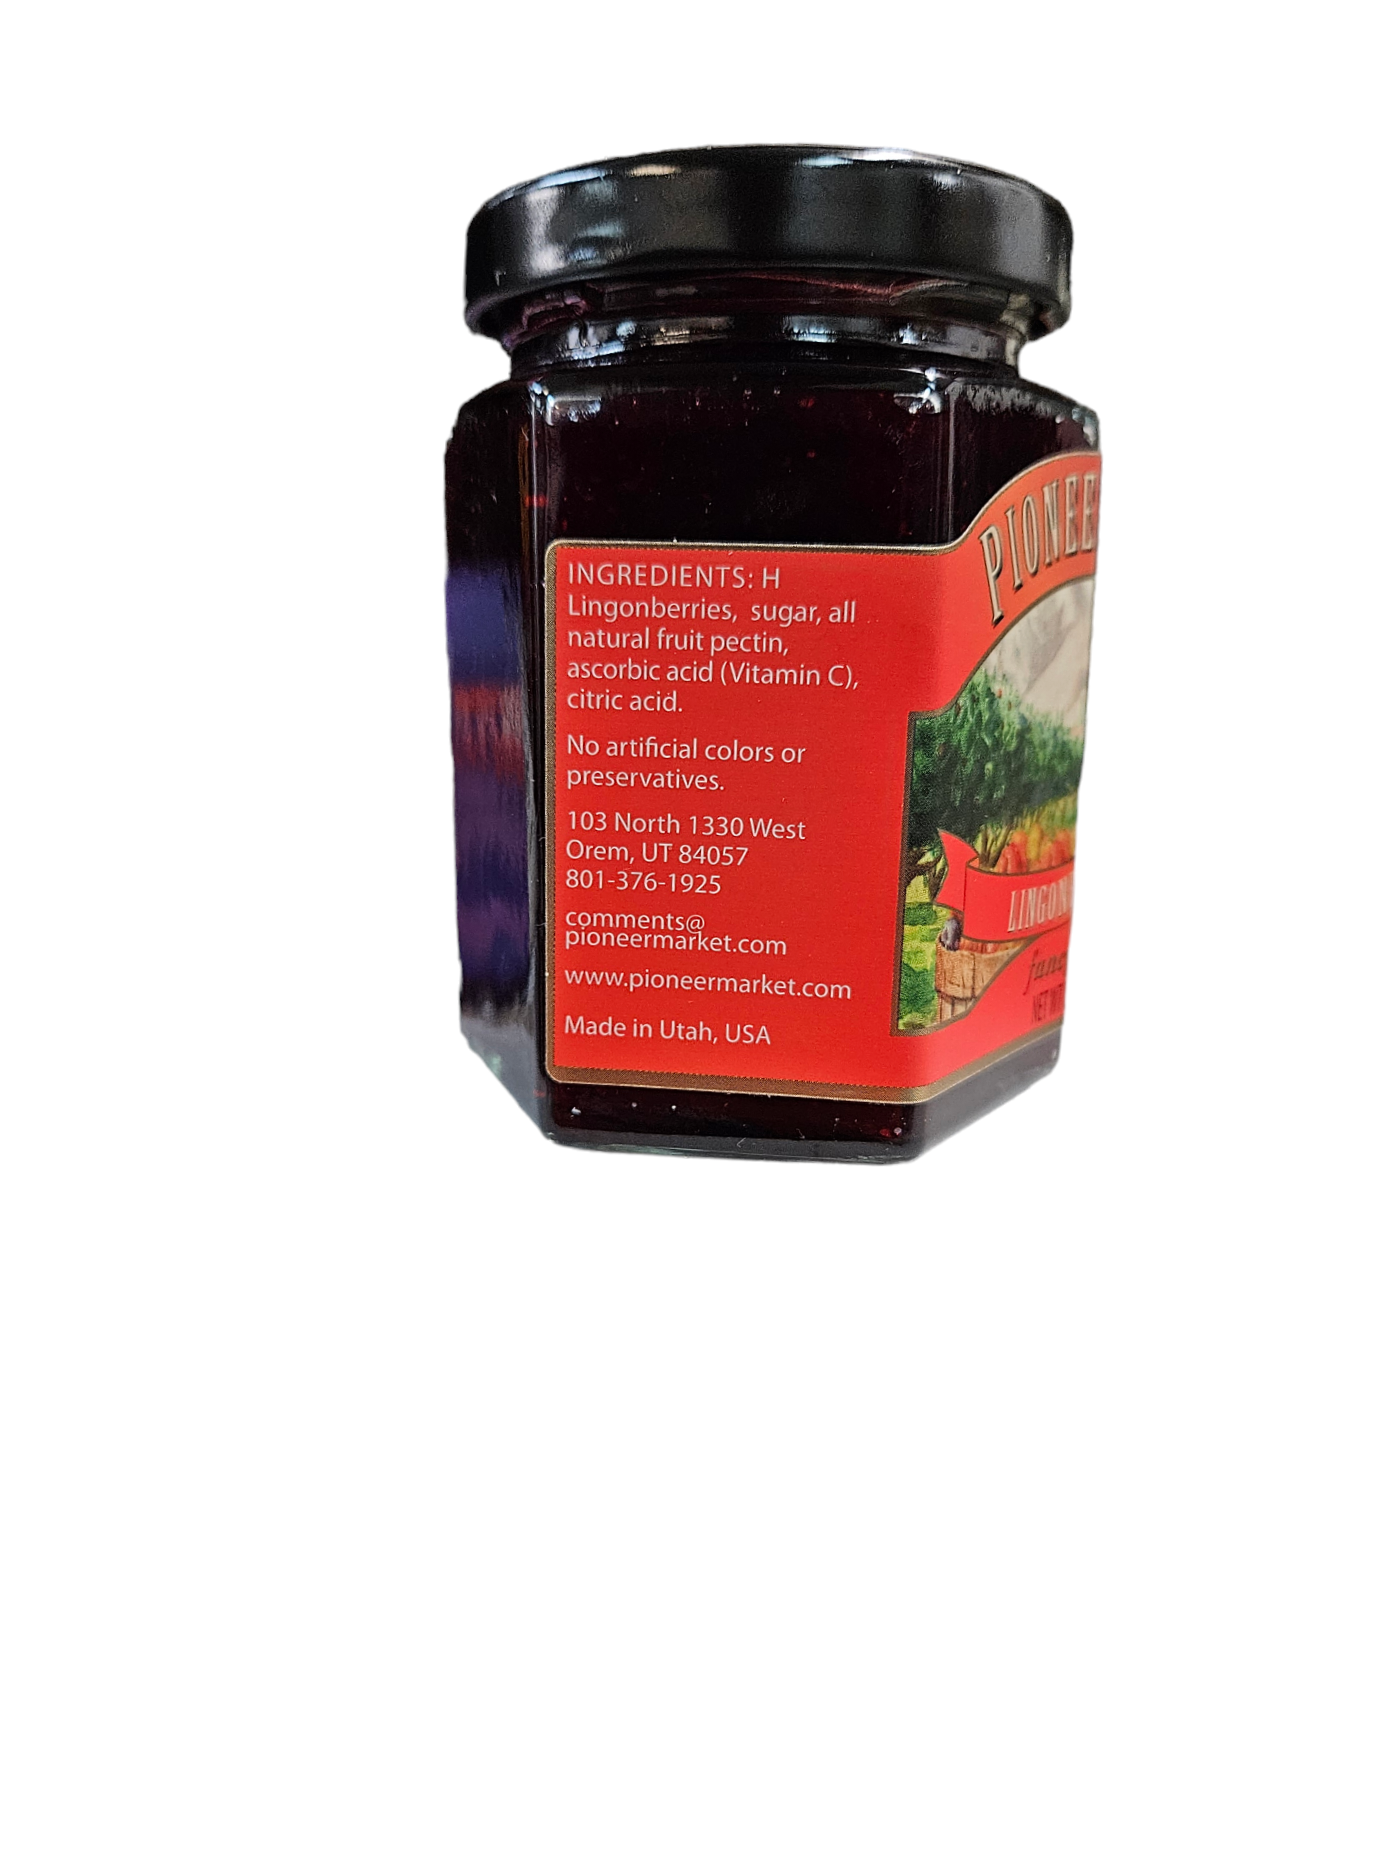 Ligonberry Jam